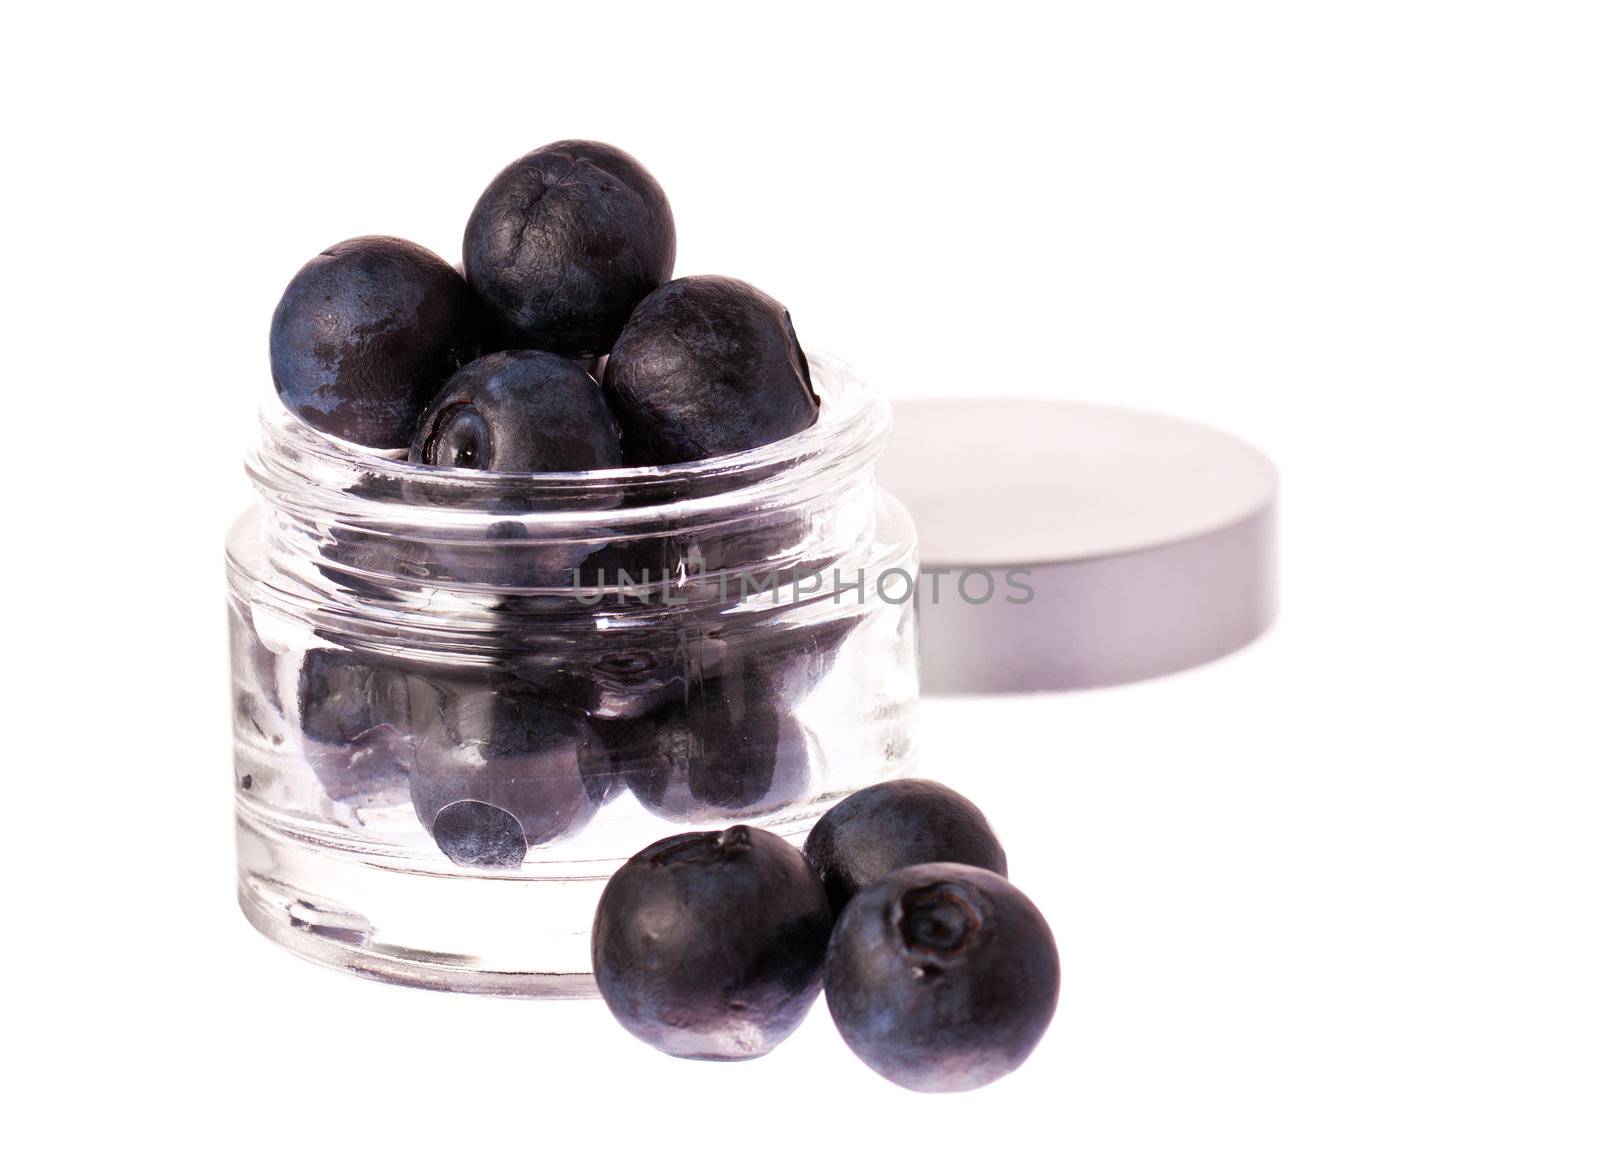 Fresh blueberries in a beauty cream jar by Jaykayl